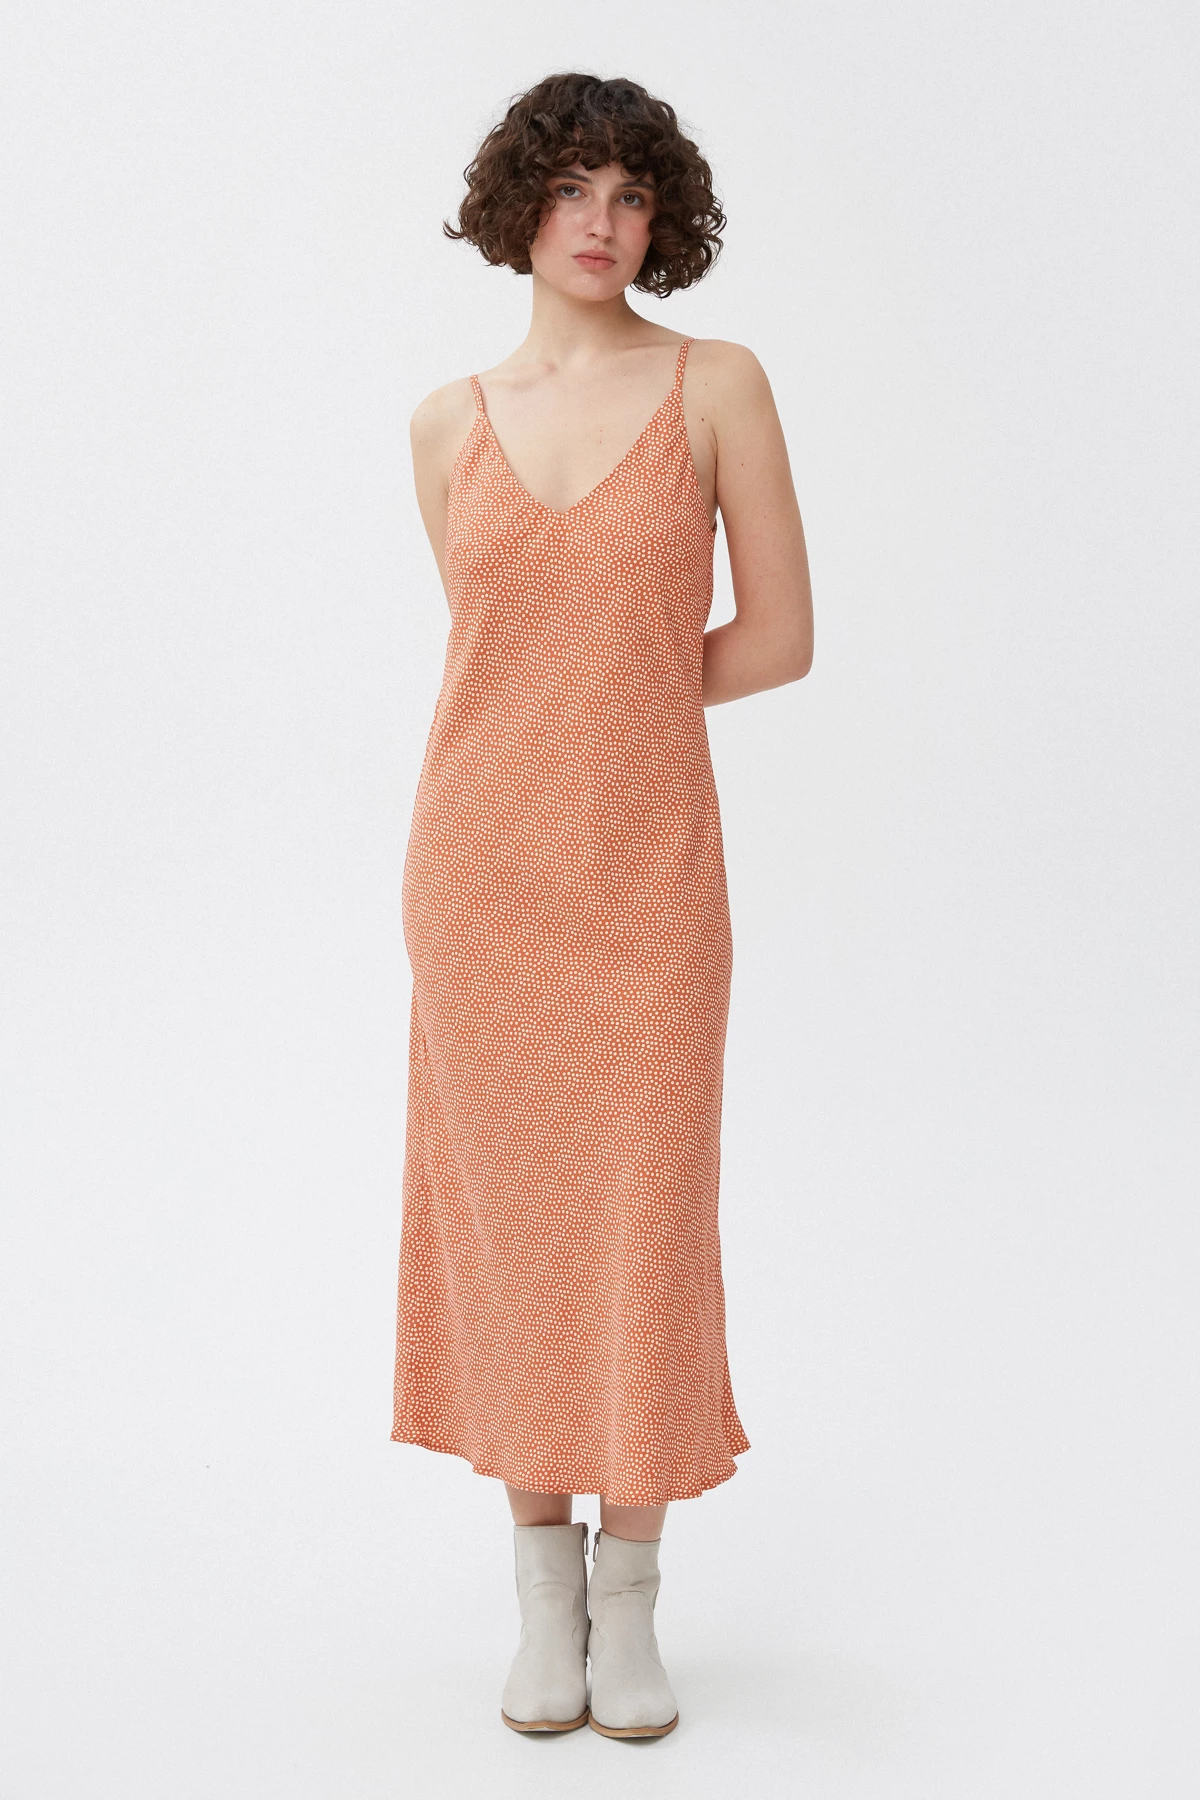 Viscose slip dress in milky polka dot print, photo 2